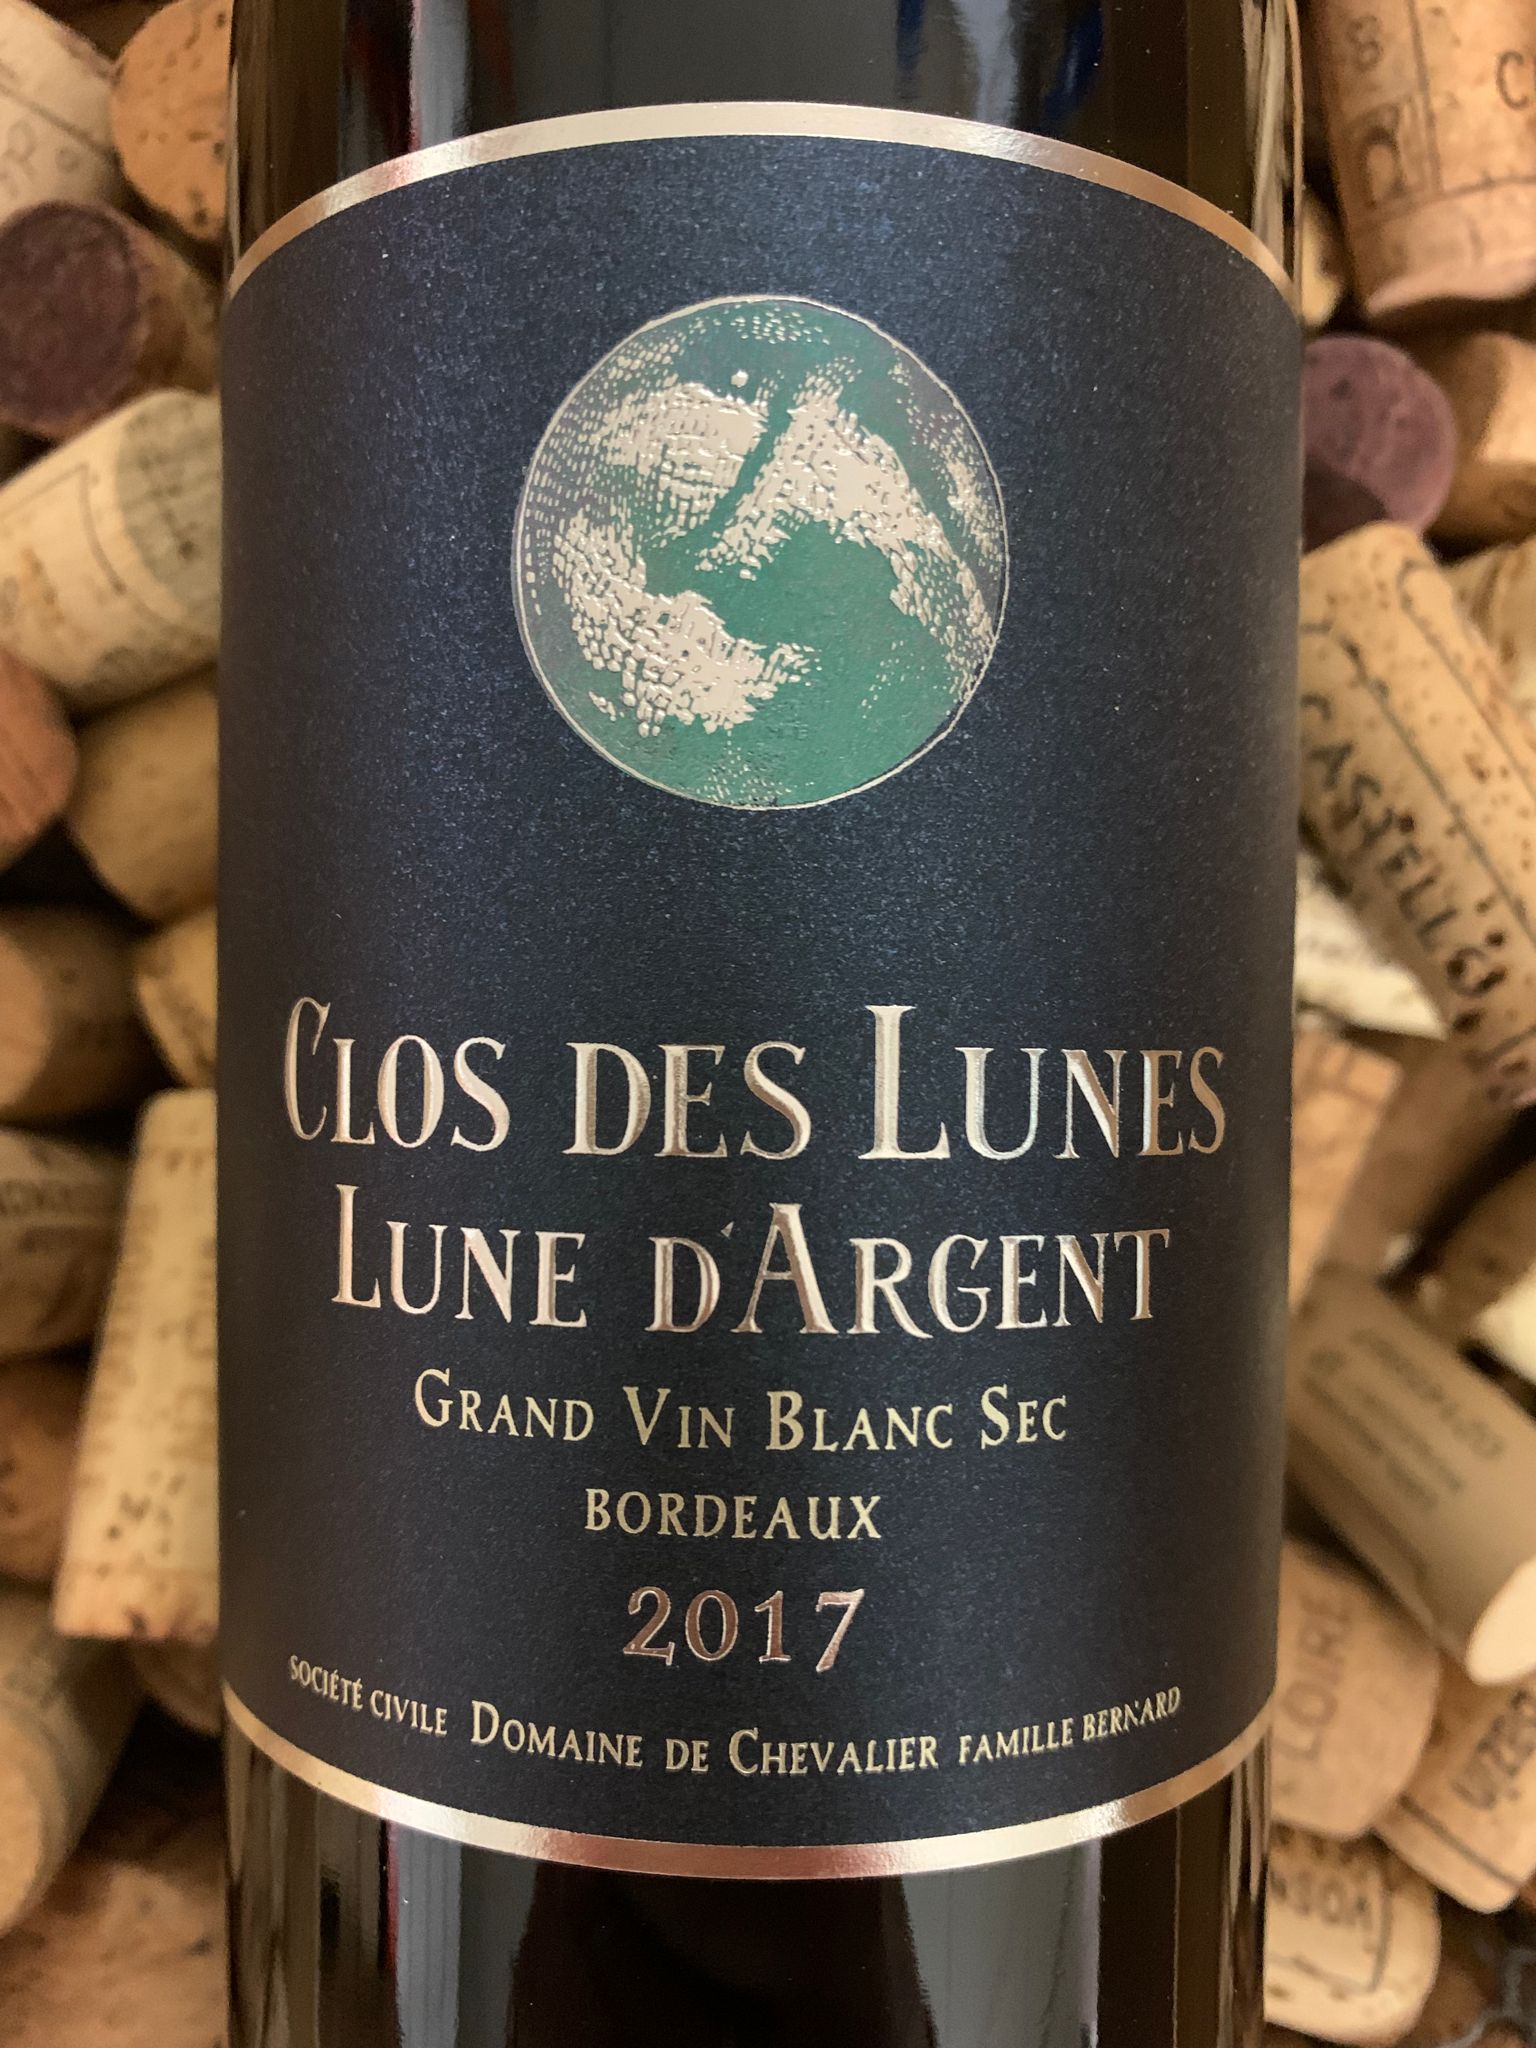 Clos des Lunes Lune d'Argent Bordeaux Blanc Sec 2017